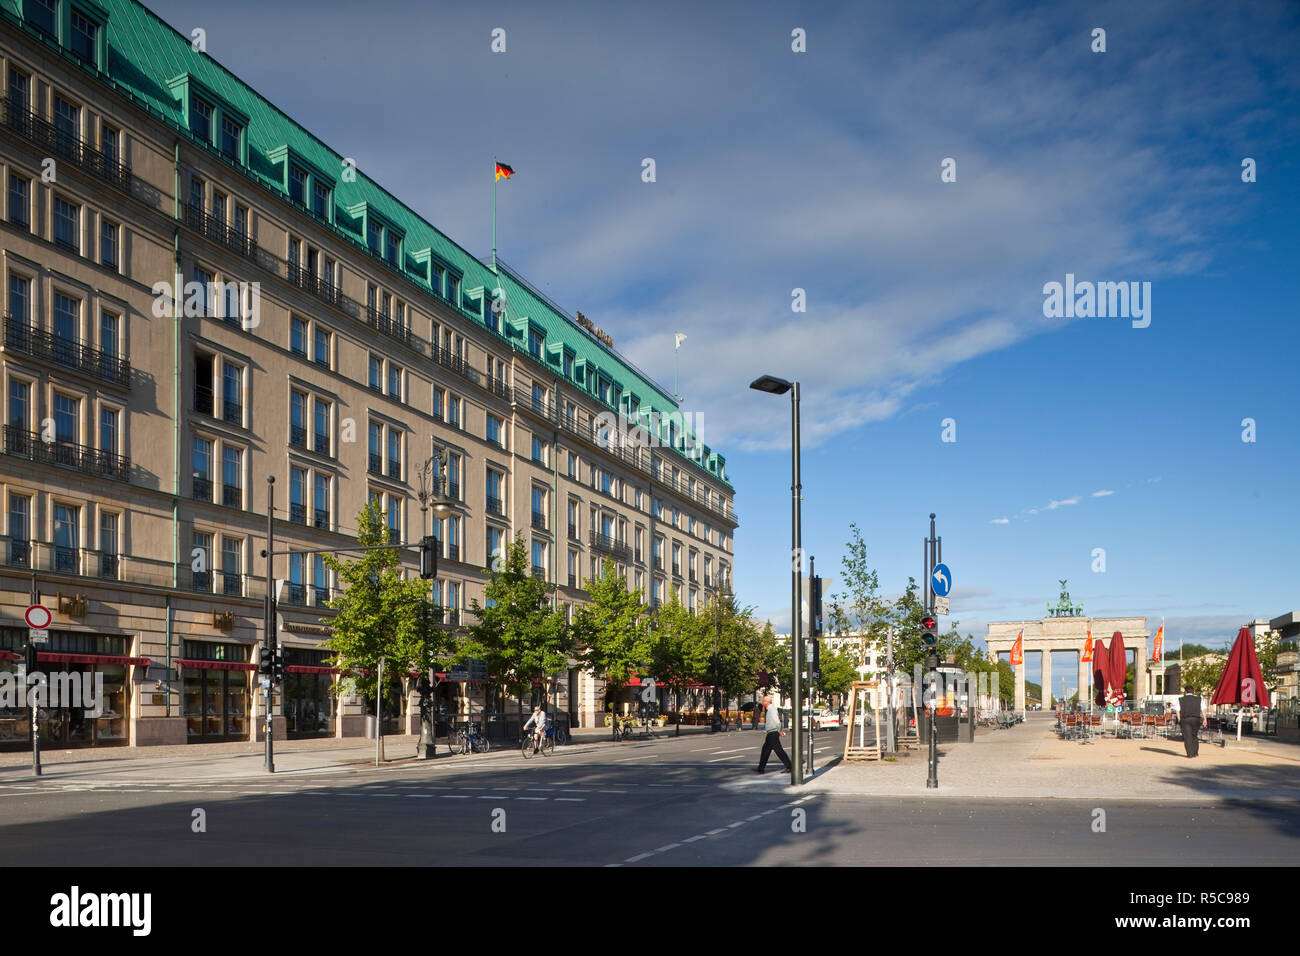 Hotel Adlon, Unter Den Linden, Berlin, Deutschland Stockfoto